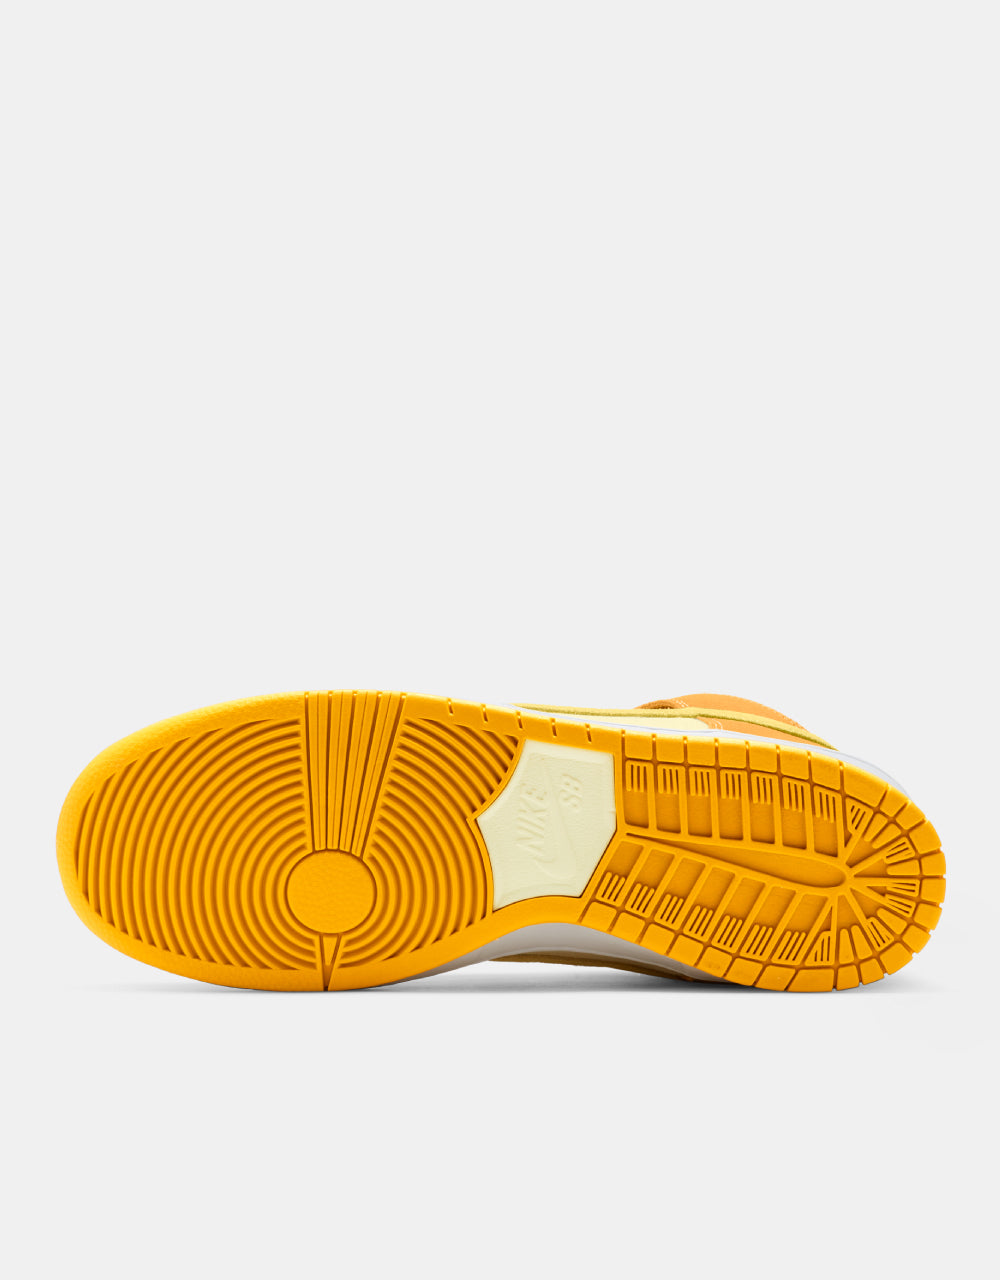 Nike SB 'Pit Stop Pineapple' Dunk High Pro Skate Shoes - University Gold/Vivid Sulfur-Citron Tint